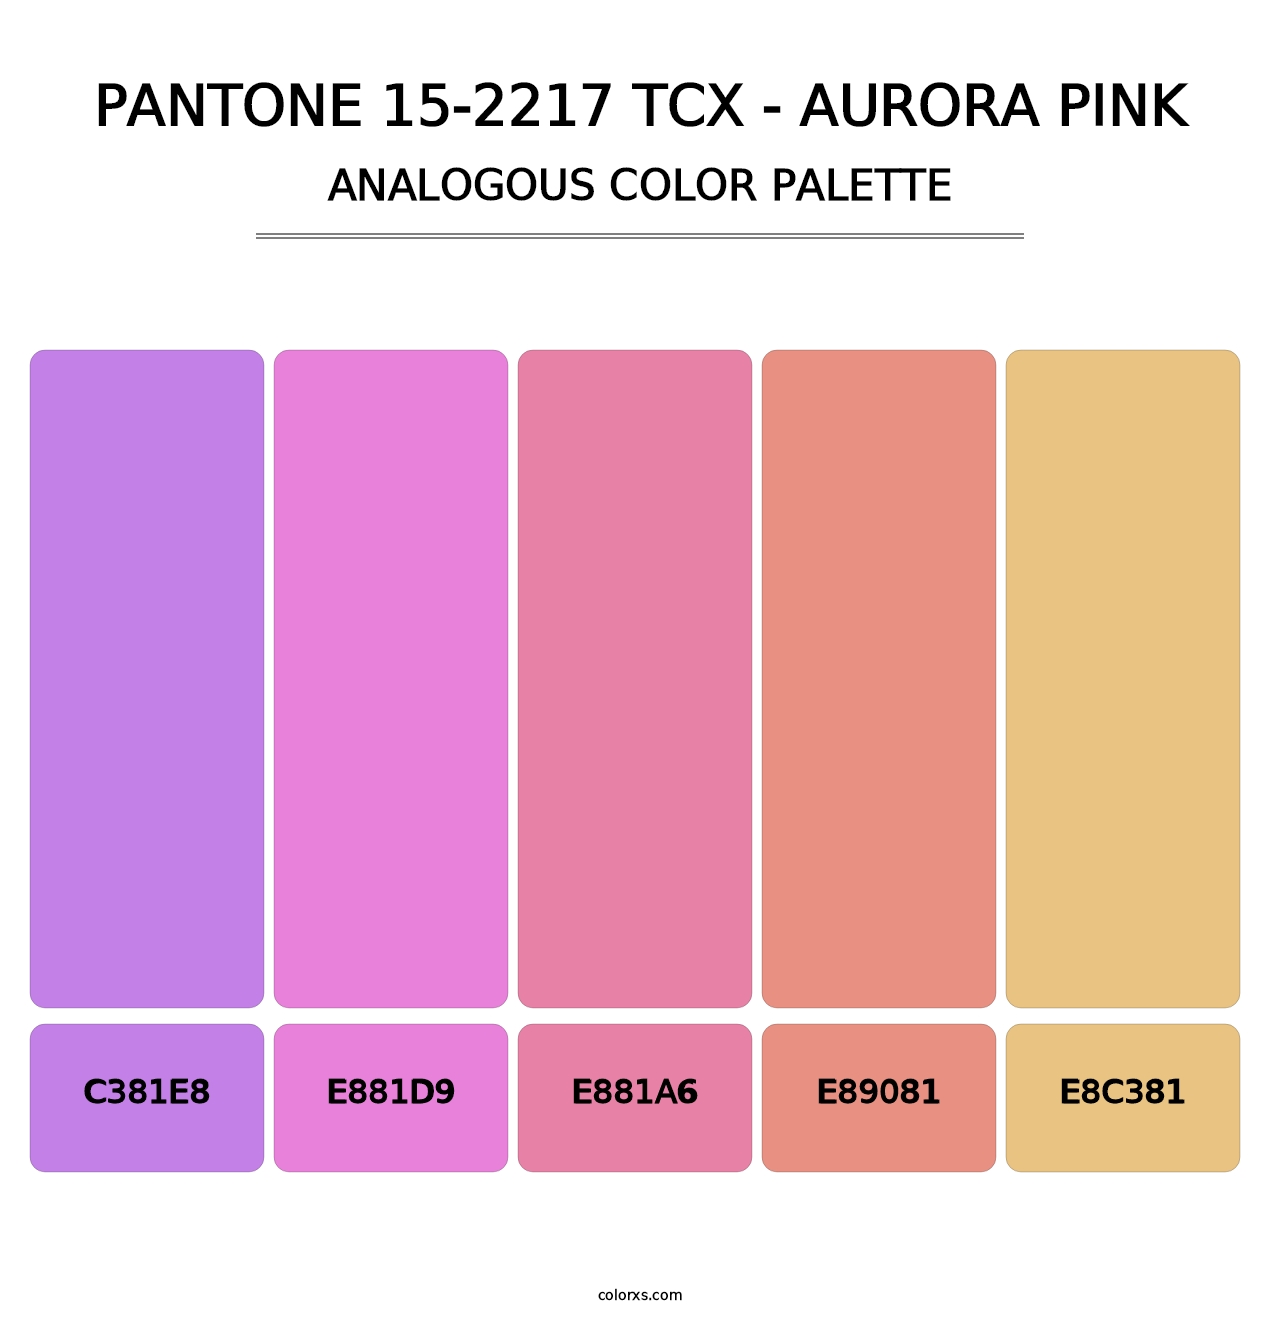 PANTONE 15-2217 TCX - Aurora Pink - Analogous Color Palette